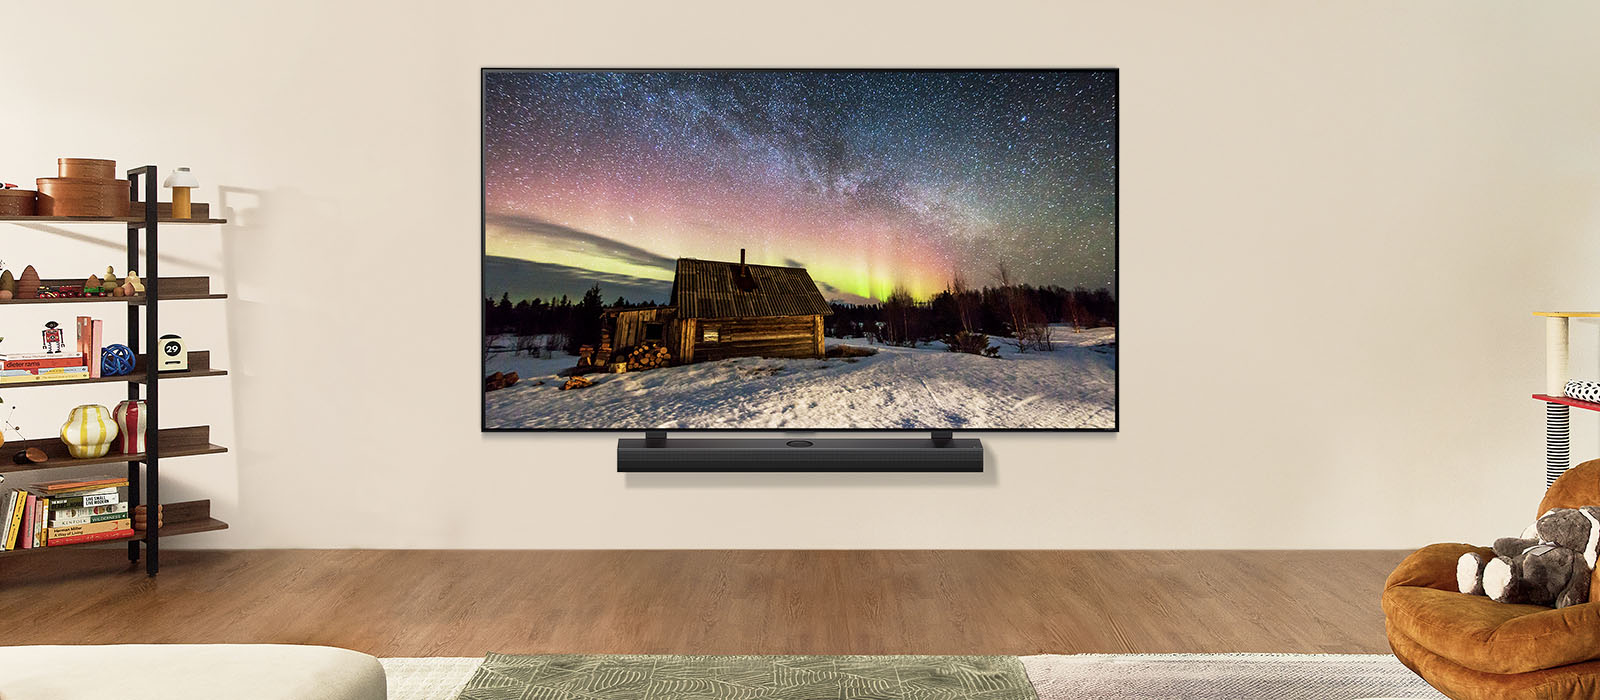 LG TV i LG Soundbar w nowoczesnej przestrzeni dziennej. Obraz zorzy polarnej wyświetlany jest z idealnym poziomem jasności.